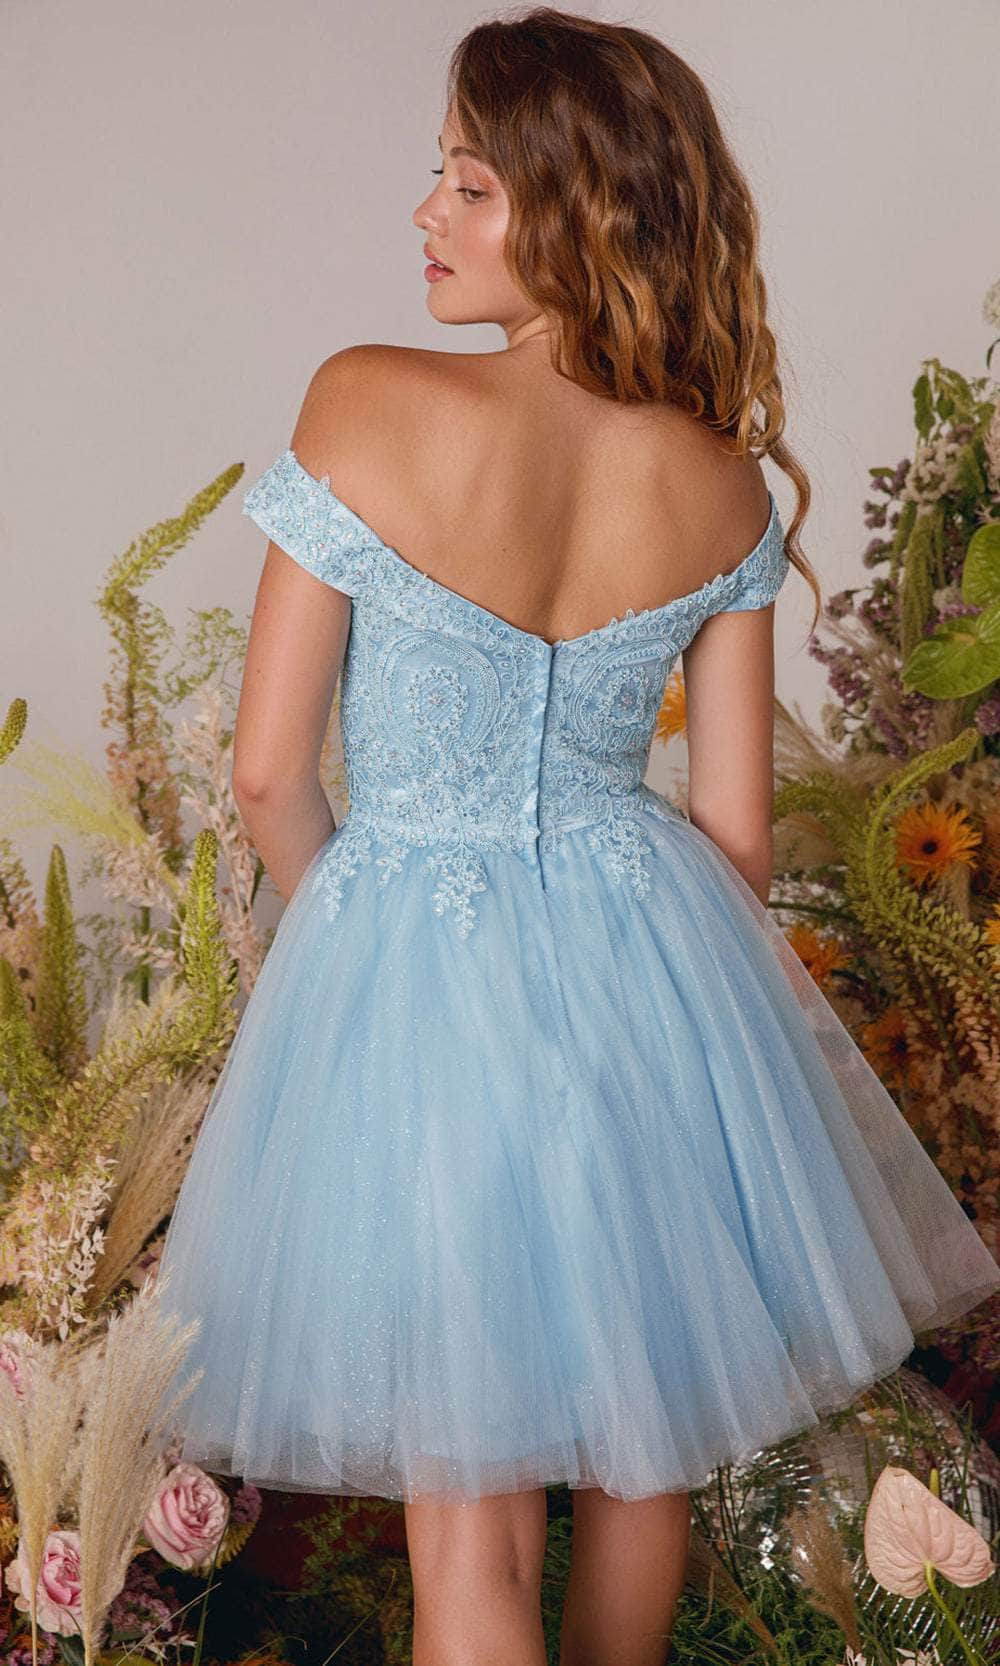 Eureka Fashion 9833 - Off Shoulder Glitter Mesh Cocktail Dress Prom Dresses